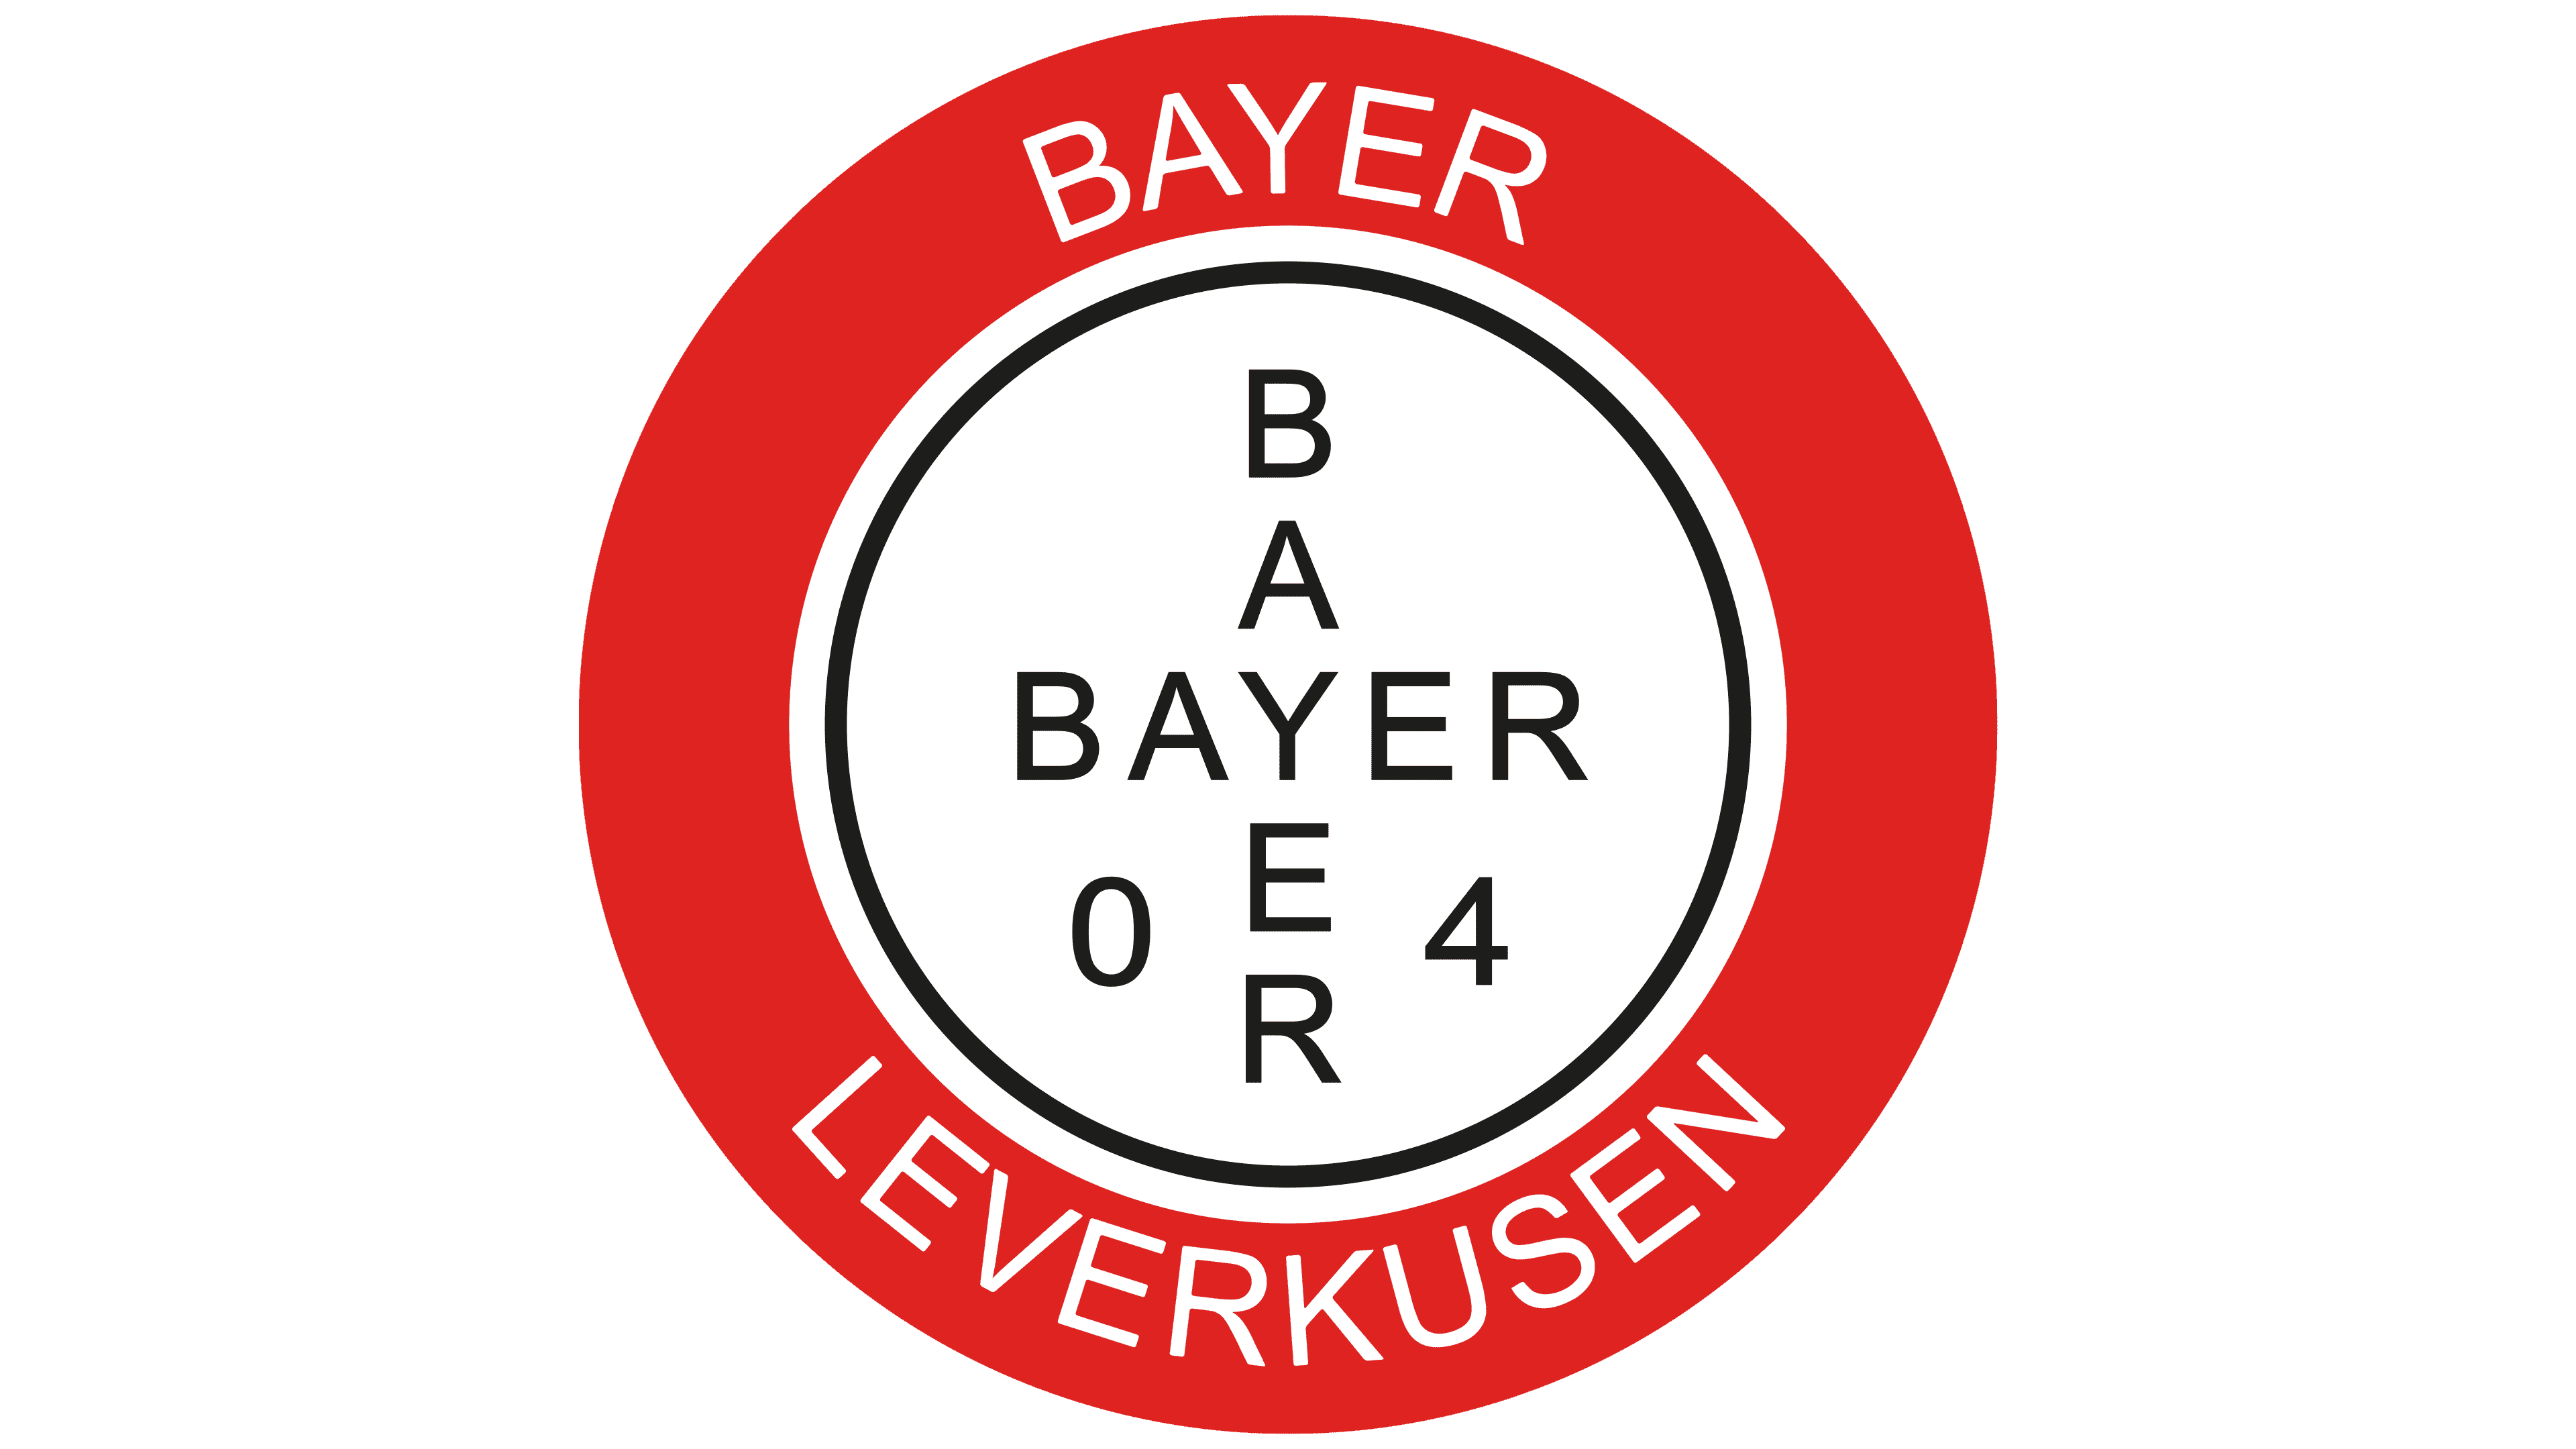 Bayer 04 Leverkusen Logo Pin Badge Retro Vintage Edelstahl plain 